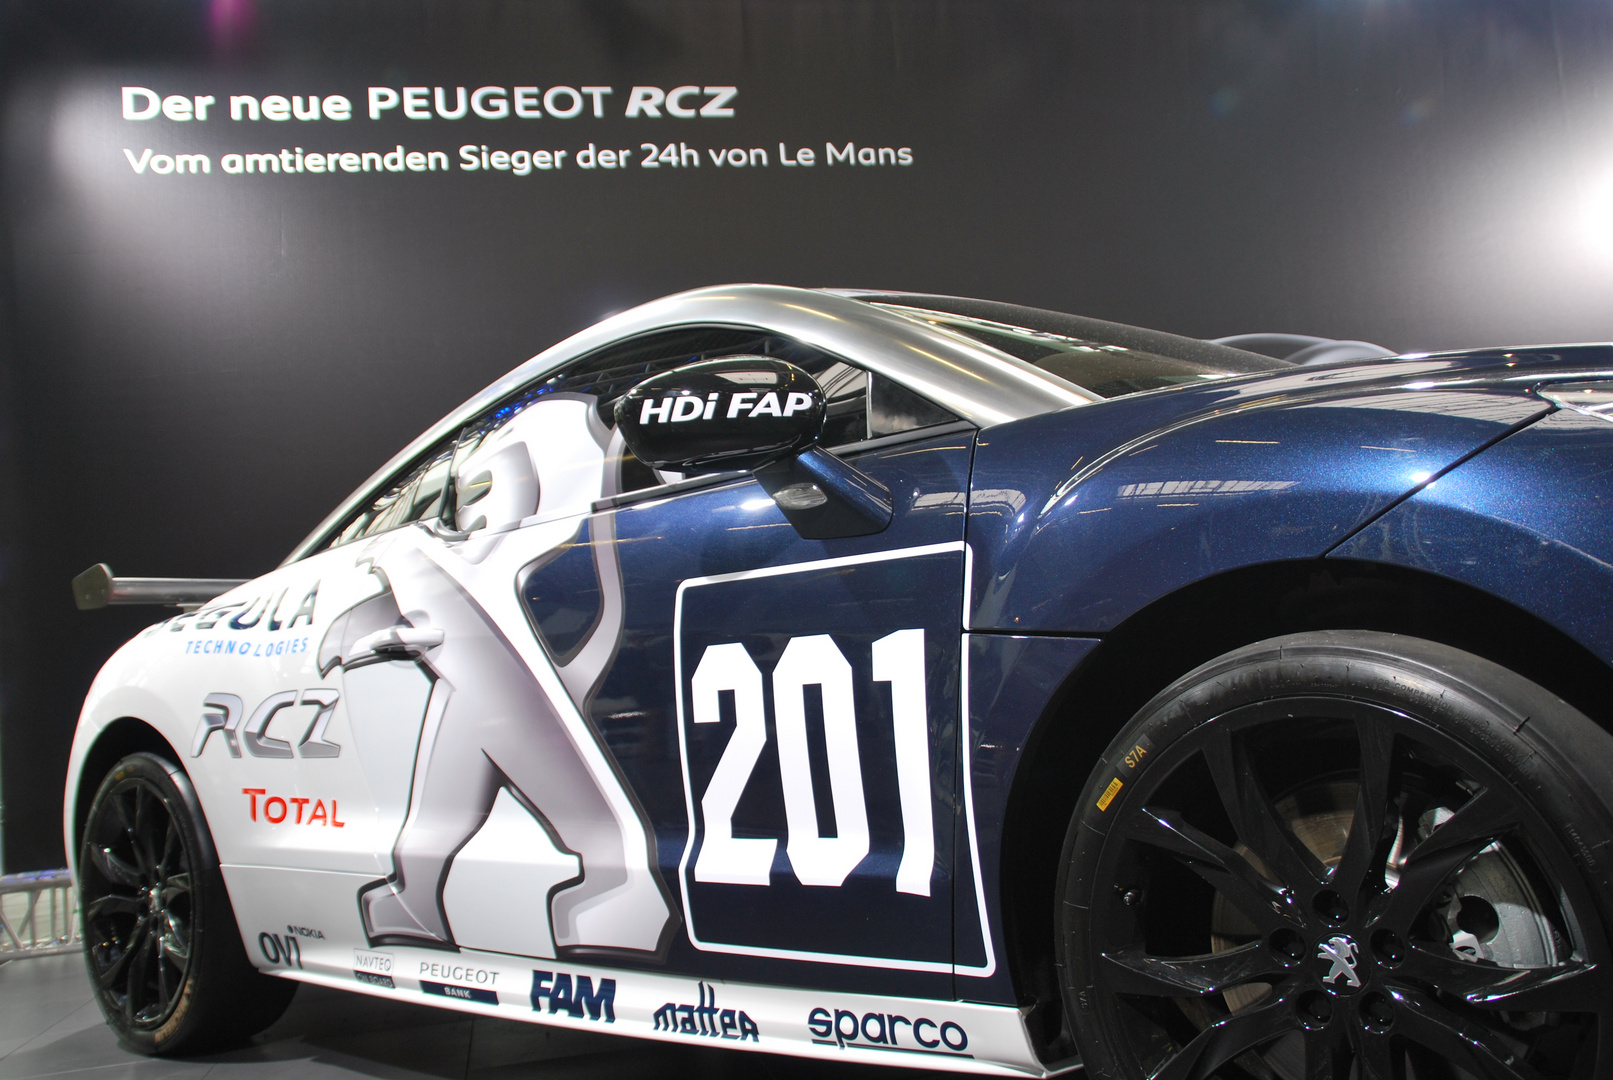 Der neue Peugeot RCZ beim 24h Rennen 2010